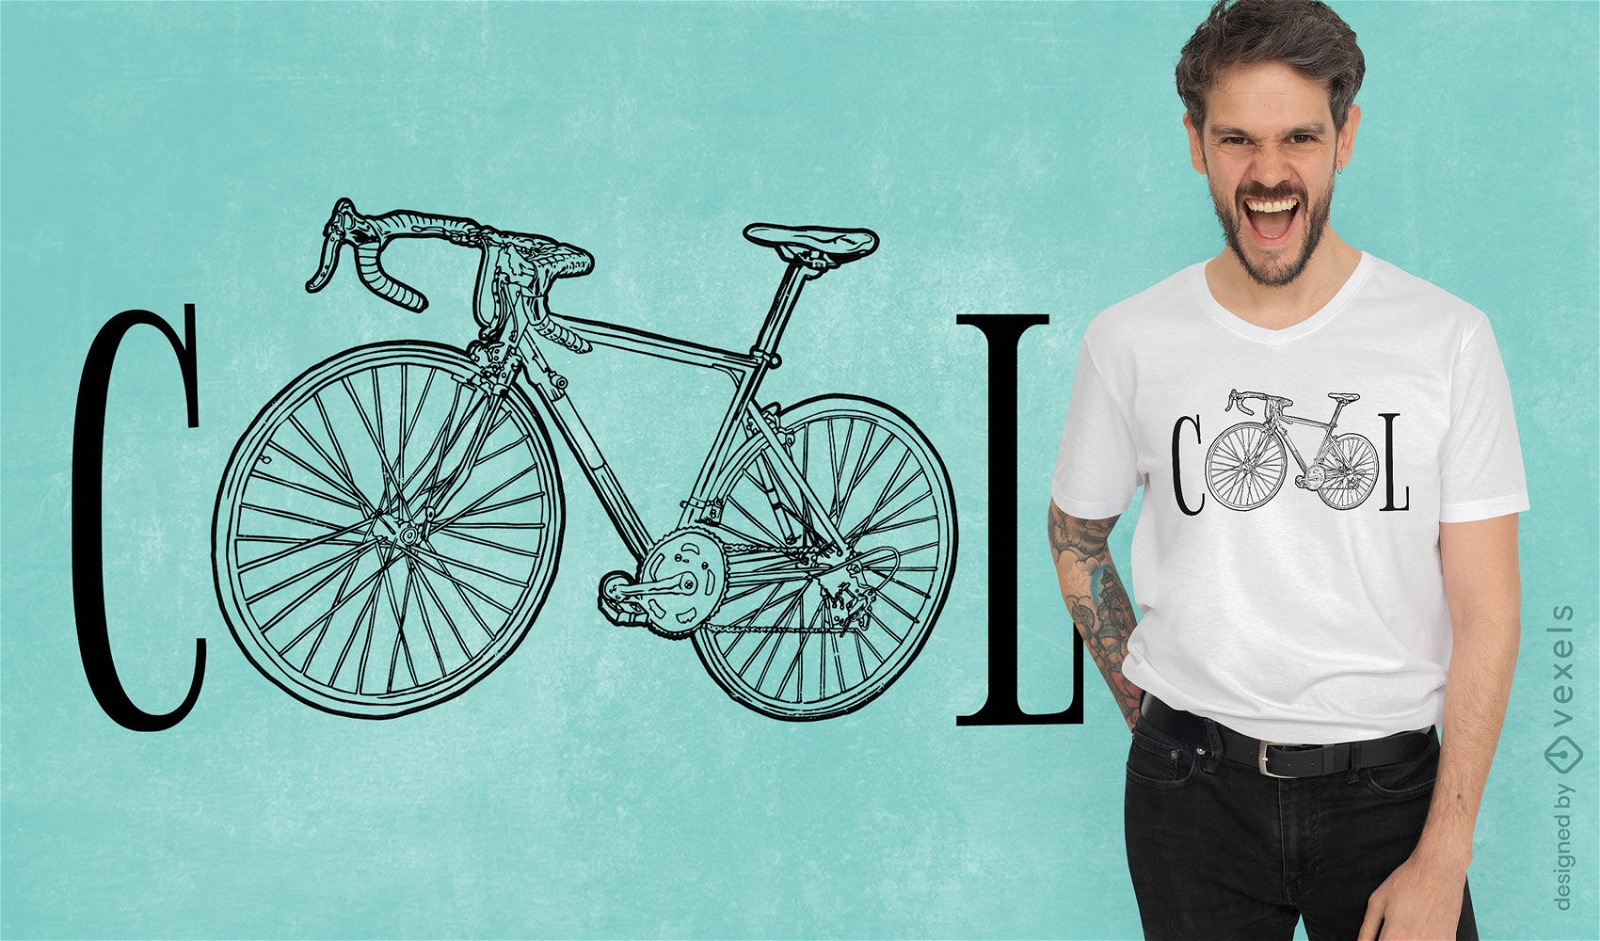 Genial dise?o de camiseta de transporte de bicicletas.